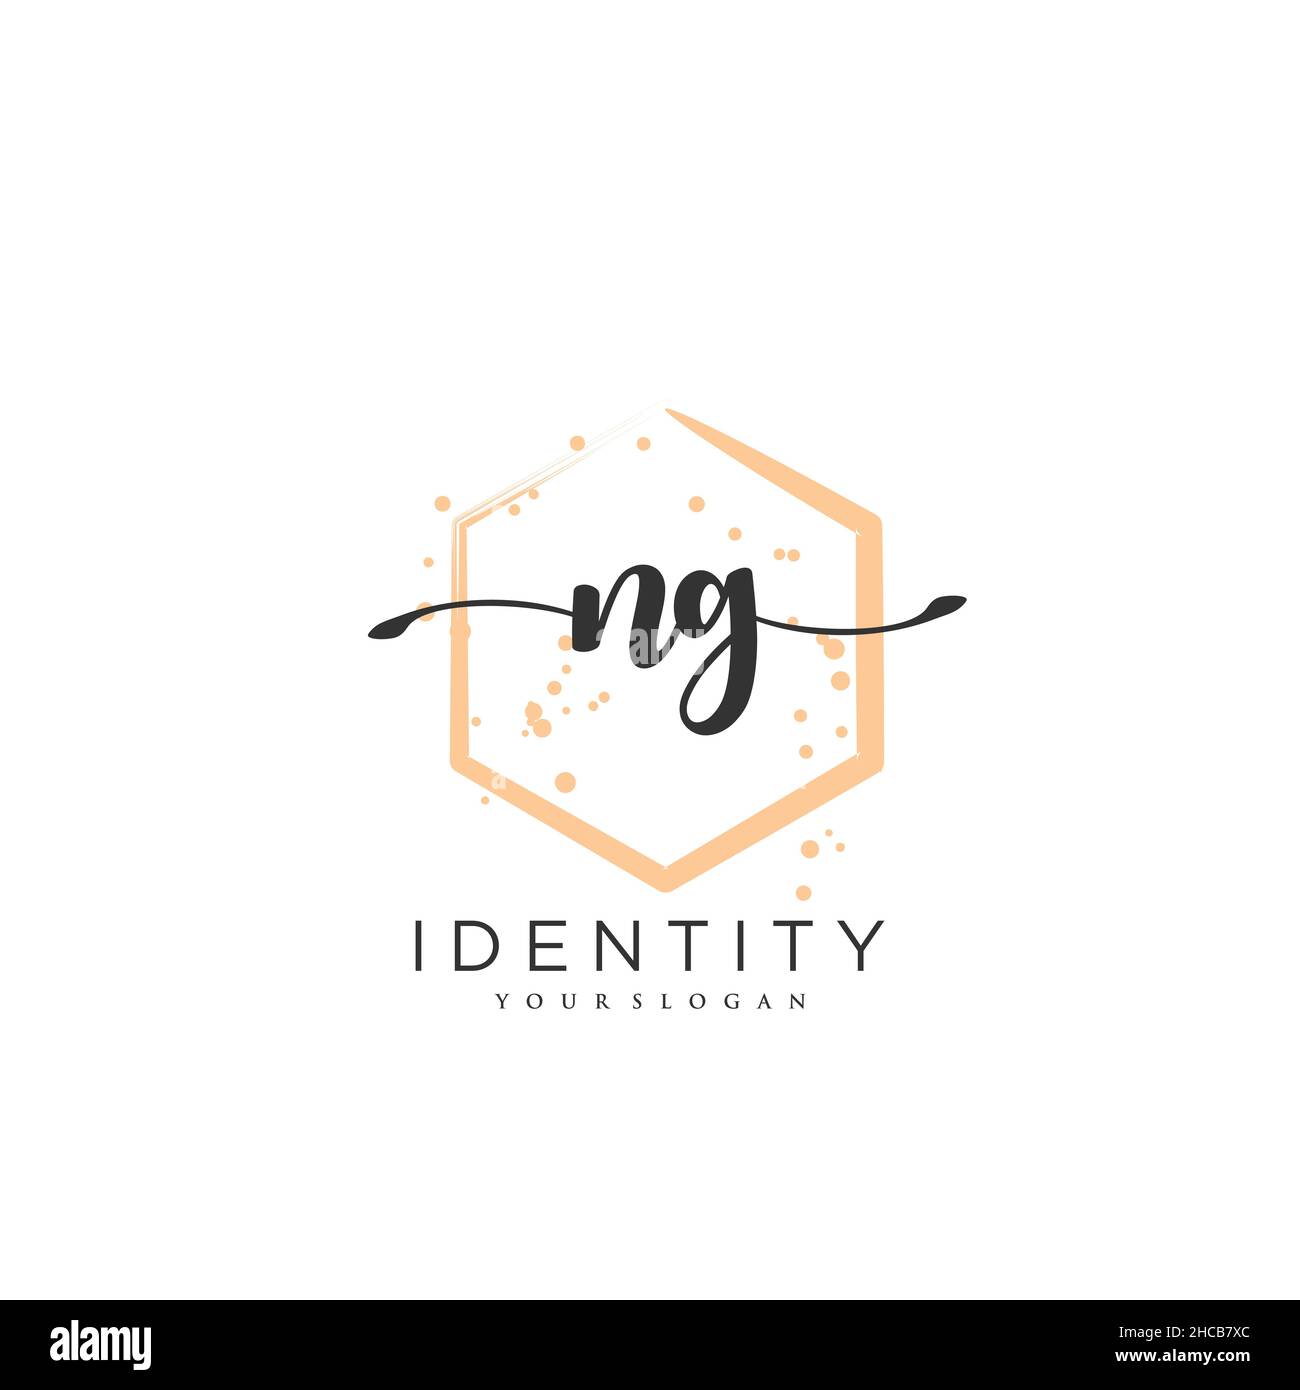 NG Handwriting logo arte vectorial de la firma inicial, boda, moda, joyería, boutique, floral y botánico con plantilla creativa para cualquier empresa Ilustración del Vector